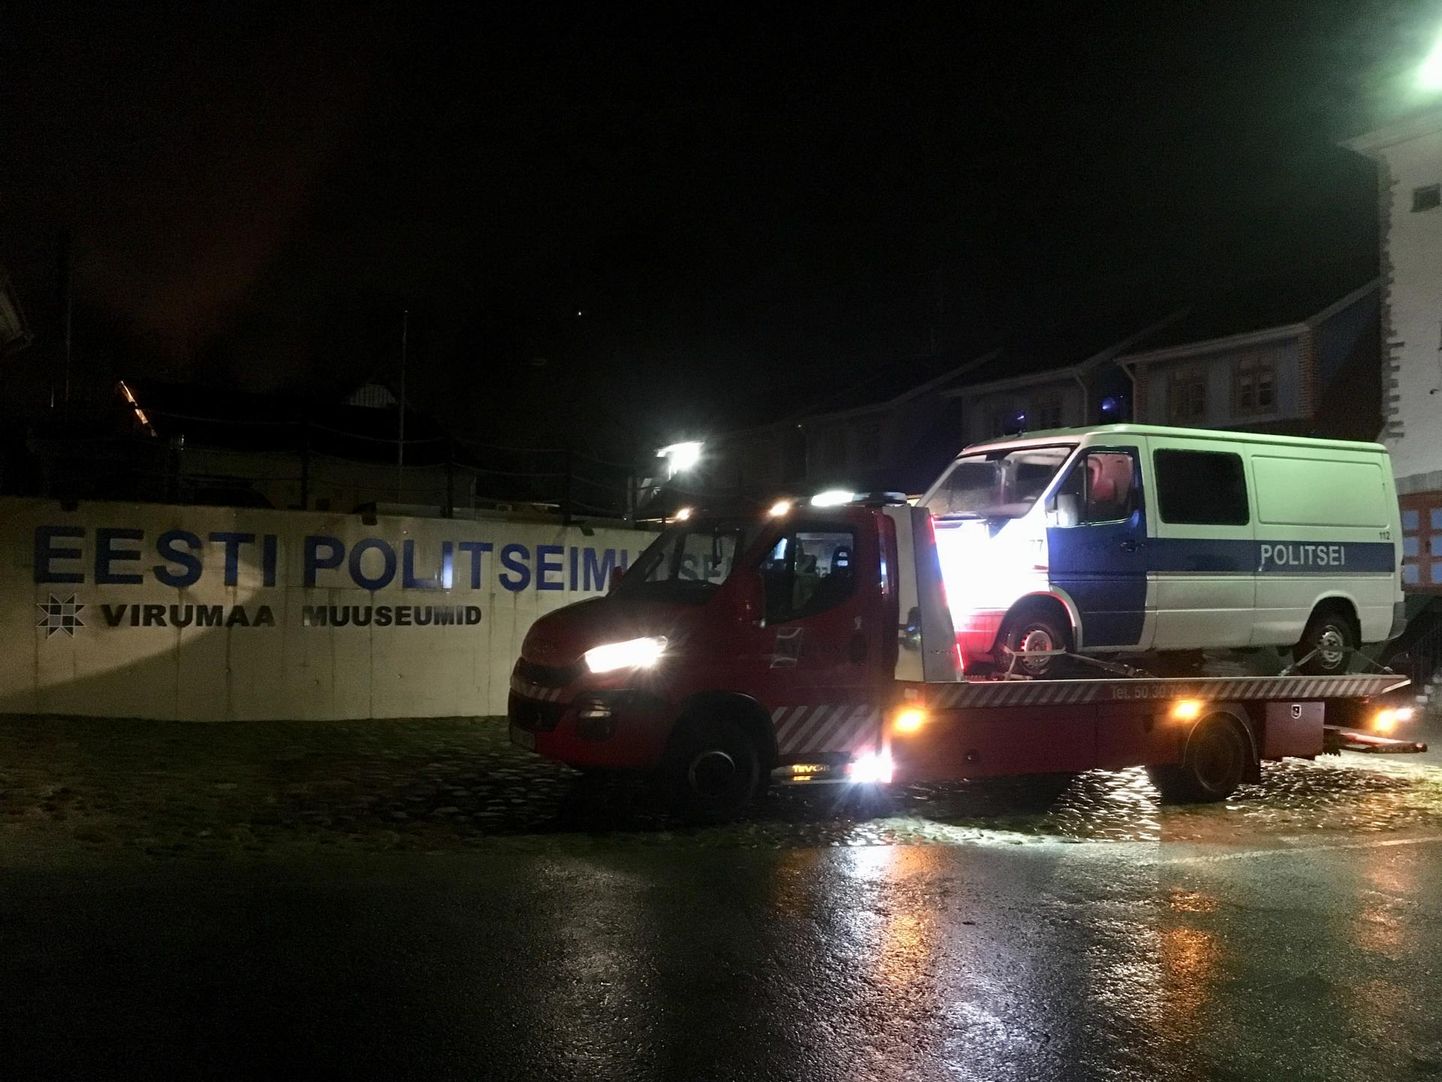 Автобус музея полиции отправился в путешествие под покровом ночи.